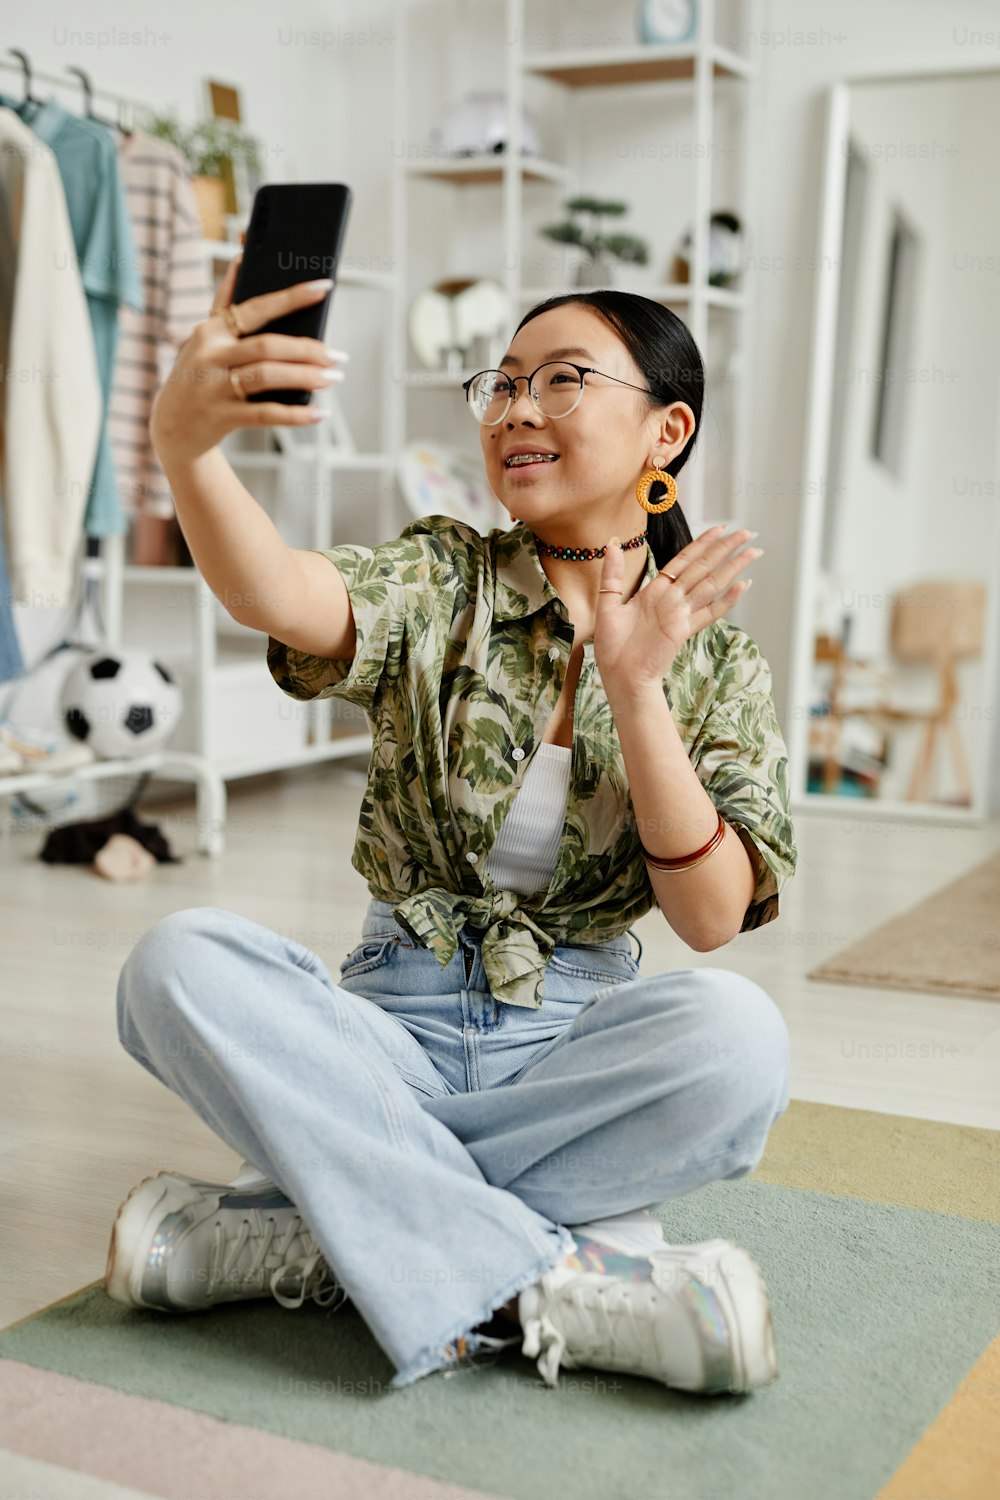 Retrato vertical de cuerpo entero de una joven adolescente filmando una historia para las redes sociales mientras está sentada en el suelo de su casa